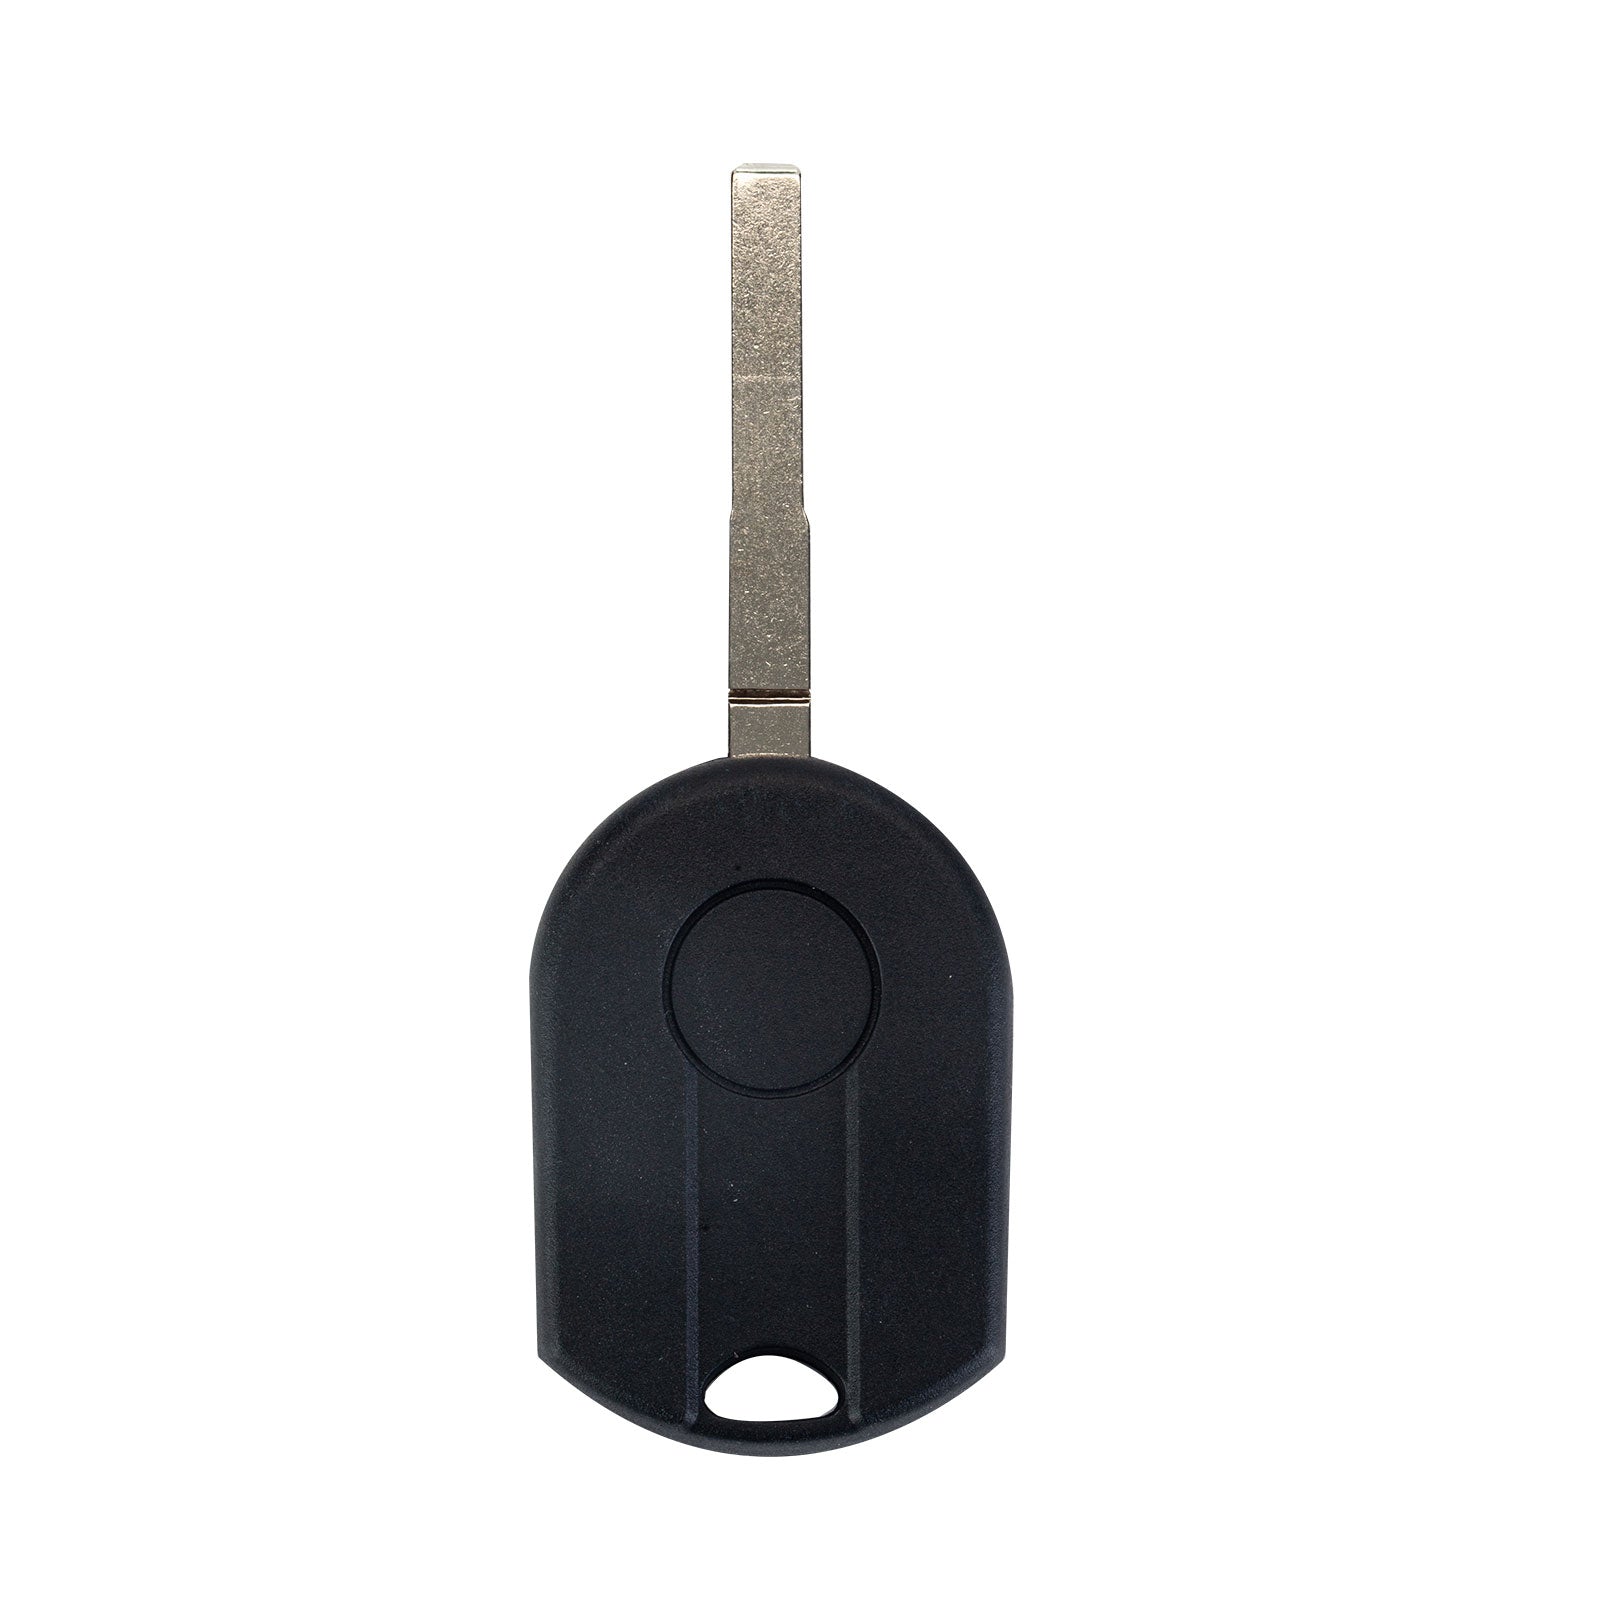 4 BTN Car Key Fob 315 MHz Replacement for 2011-2016 Ford Fiesta Keyless Entry Remote CWTWB1U793 164-R7976  KR-F4SD